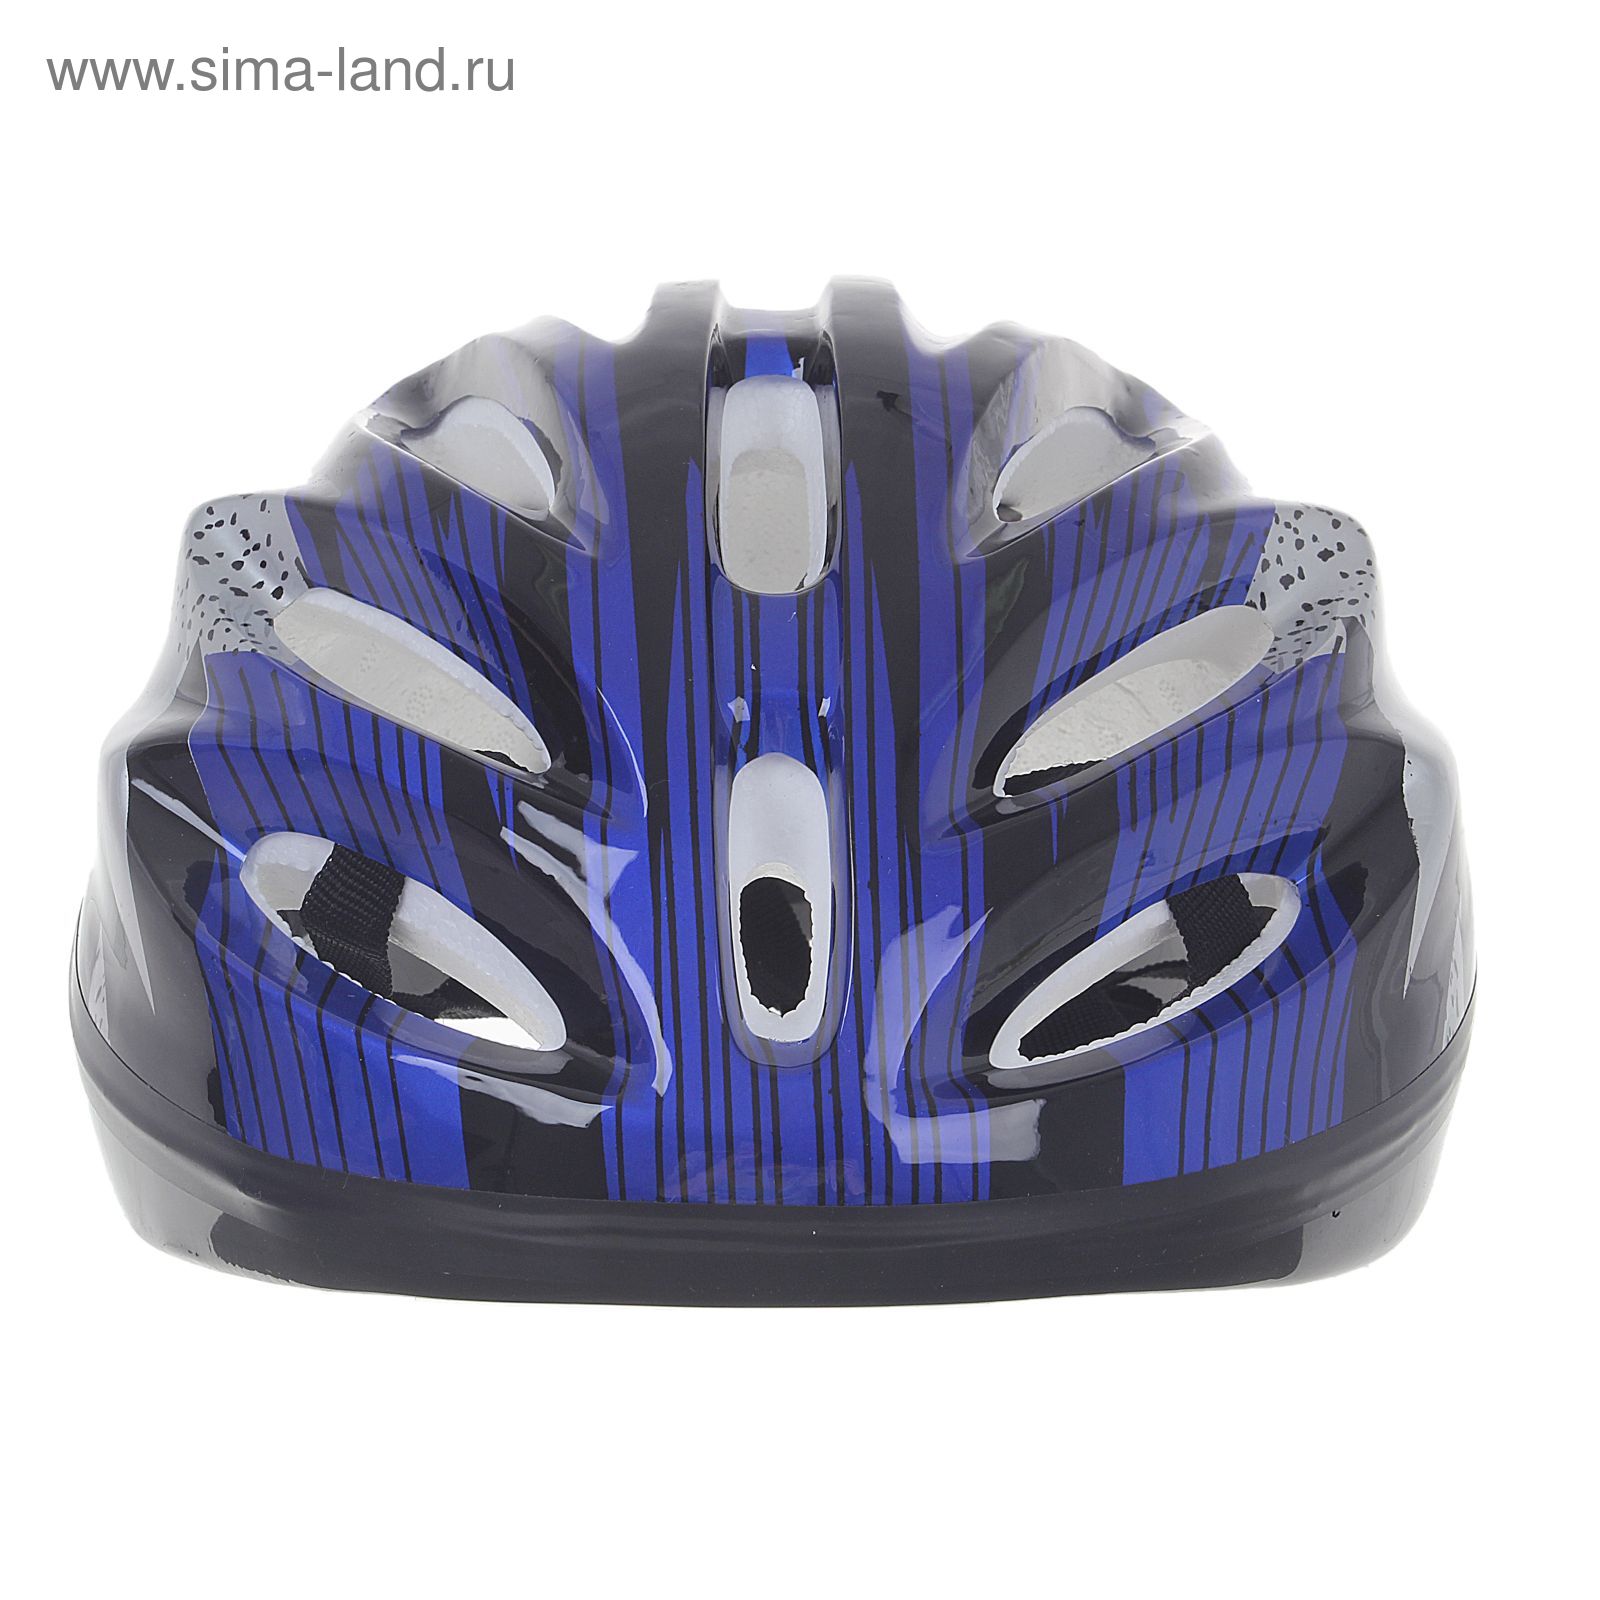 Шлем велосипедиста взрослый ОТ-11, размер L (56-58 см), цвет: синий